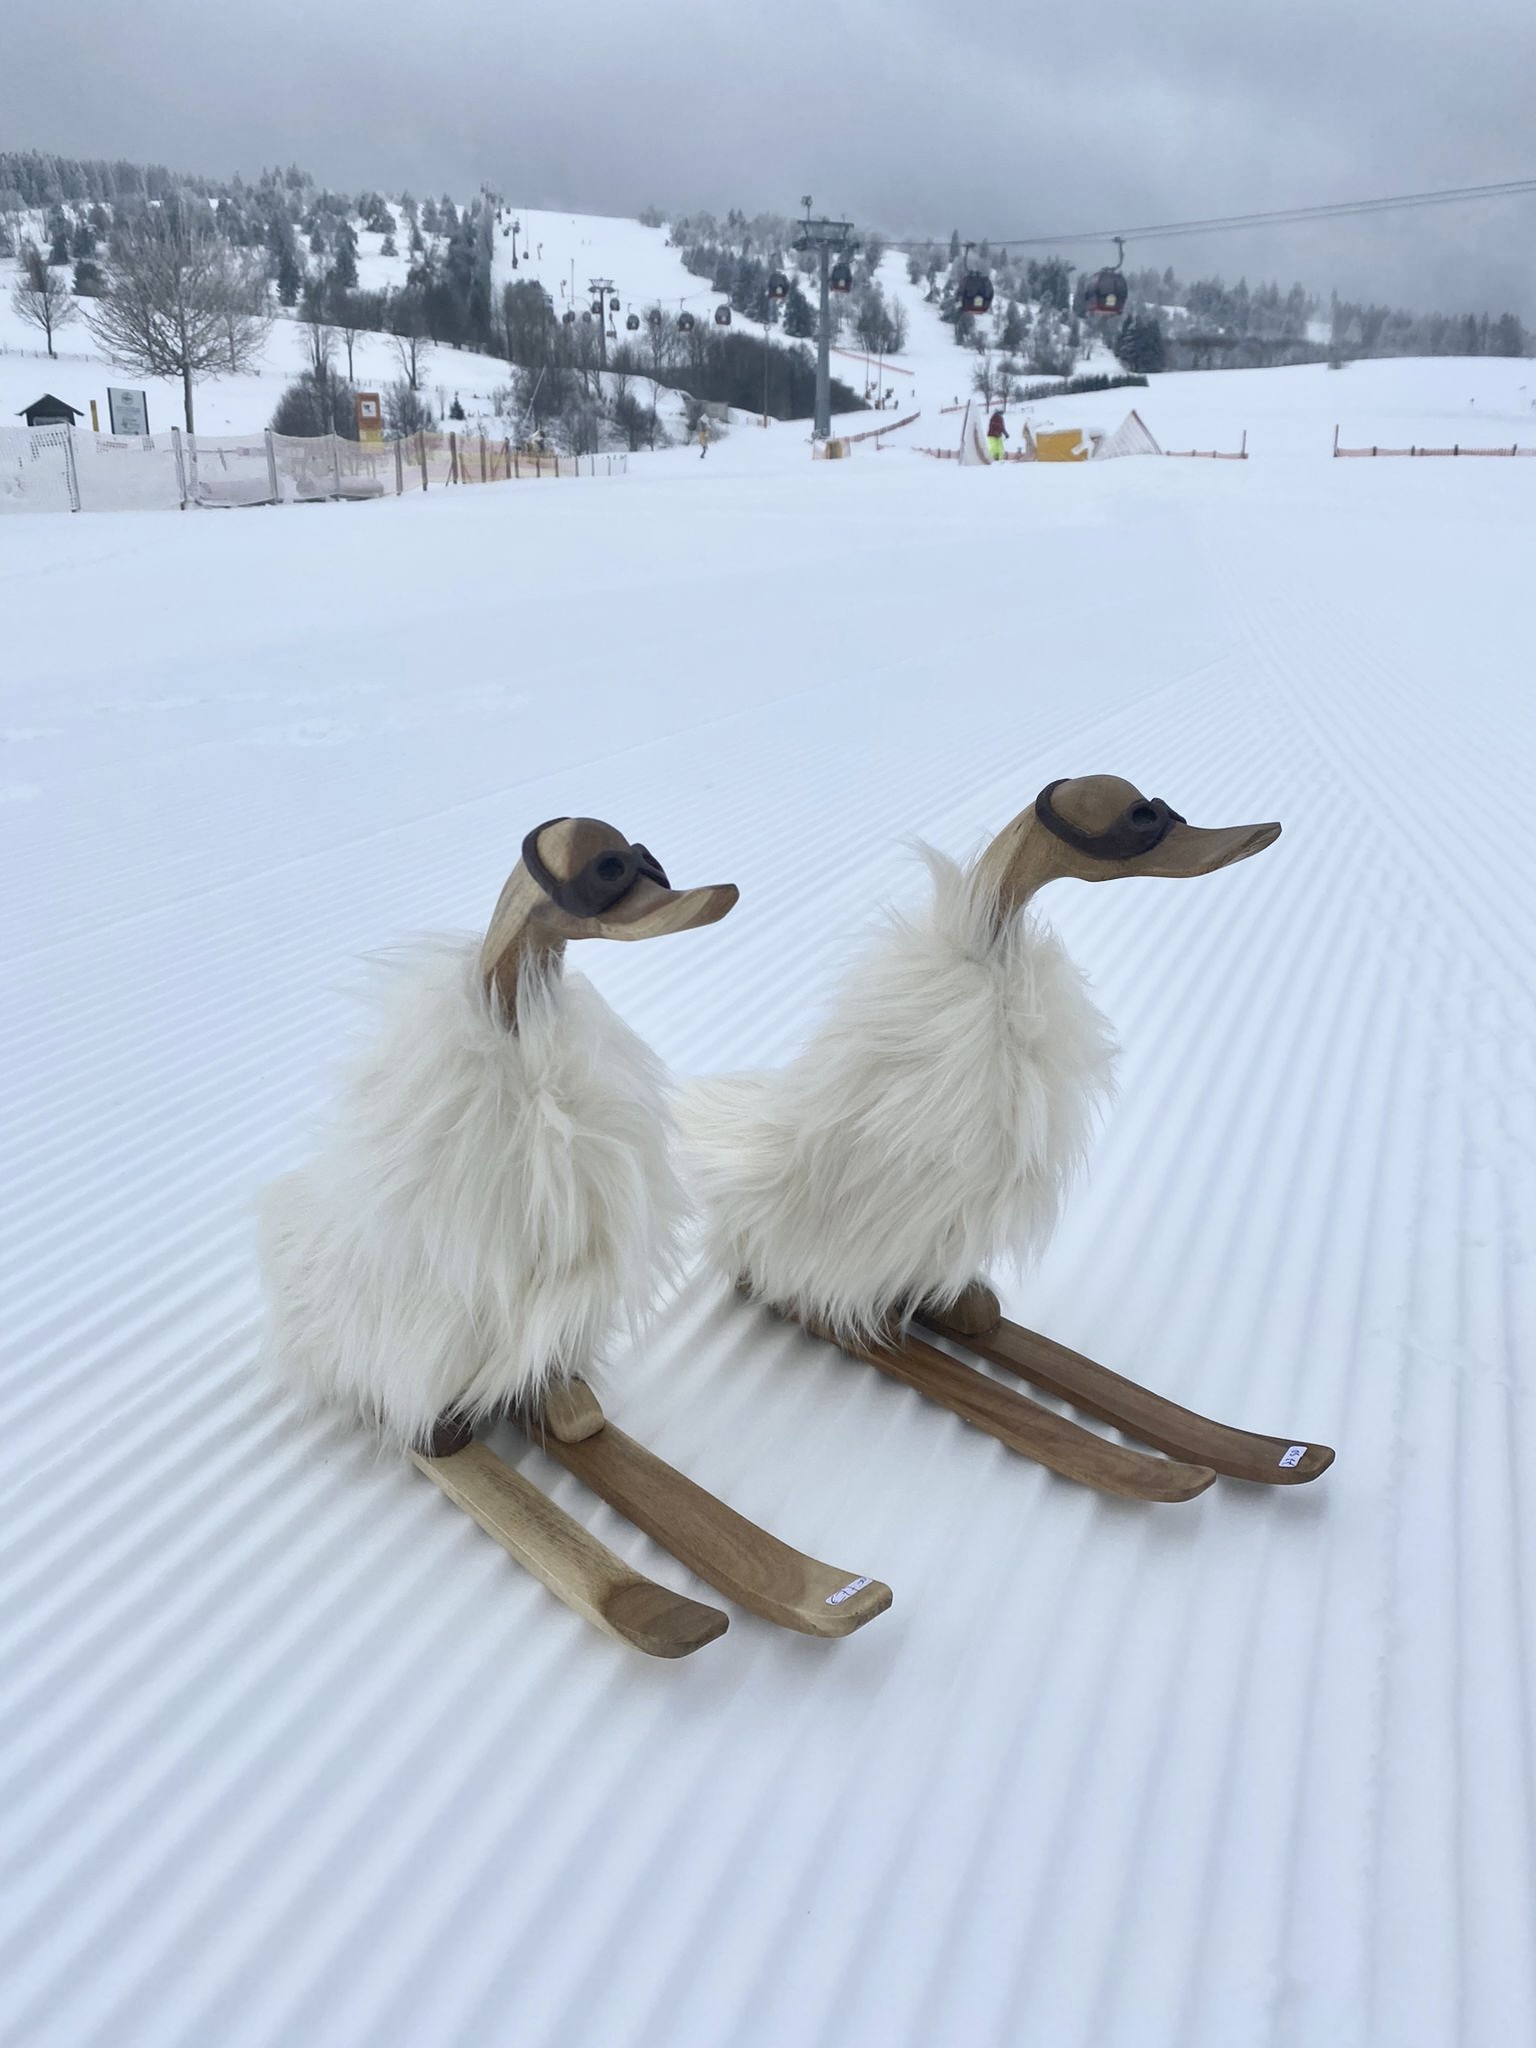 Skiënde eenden gemaakt van hout met een zachte witte vacht.